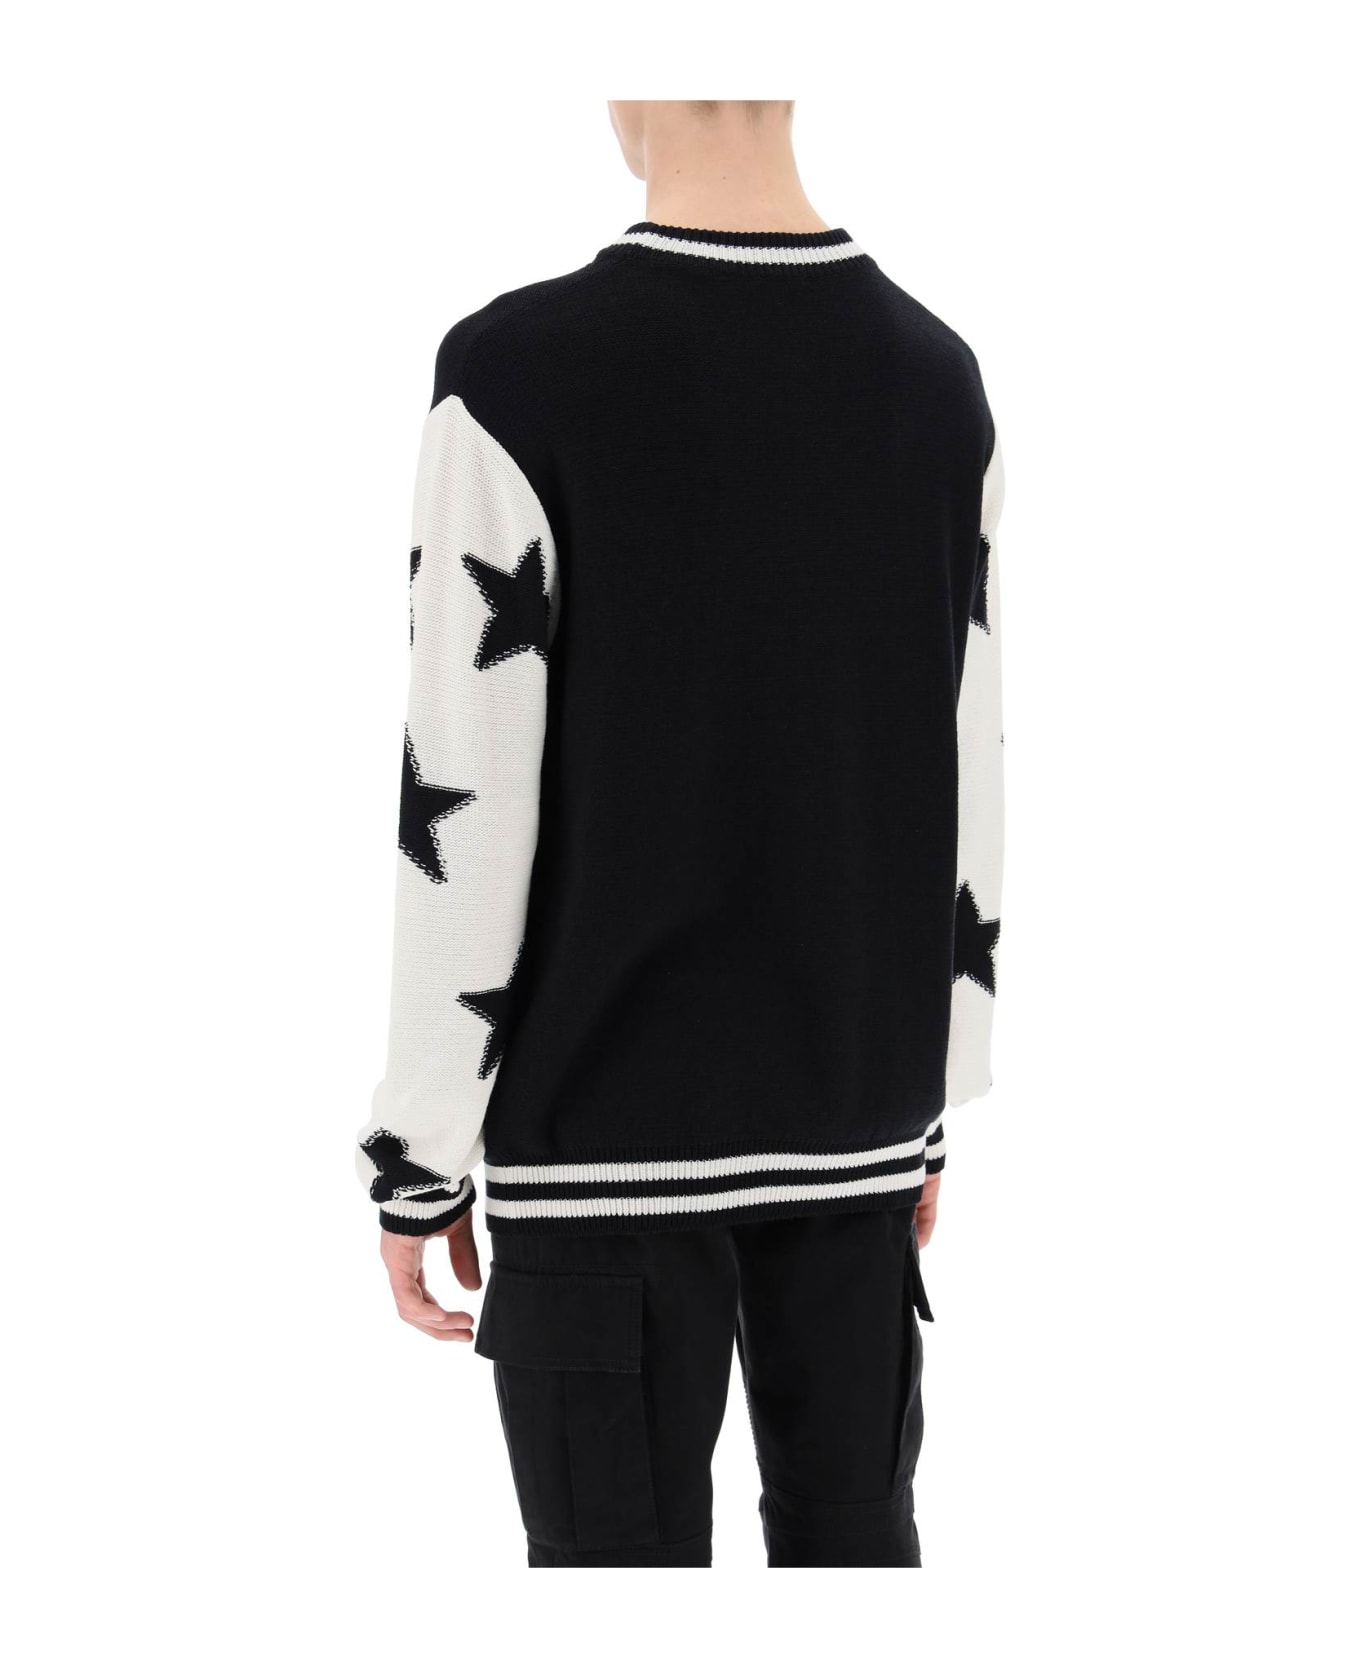 Balmain Sweater With Star Motif - NOIR NATUREL (Black)